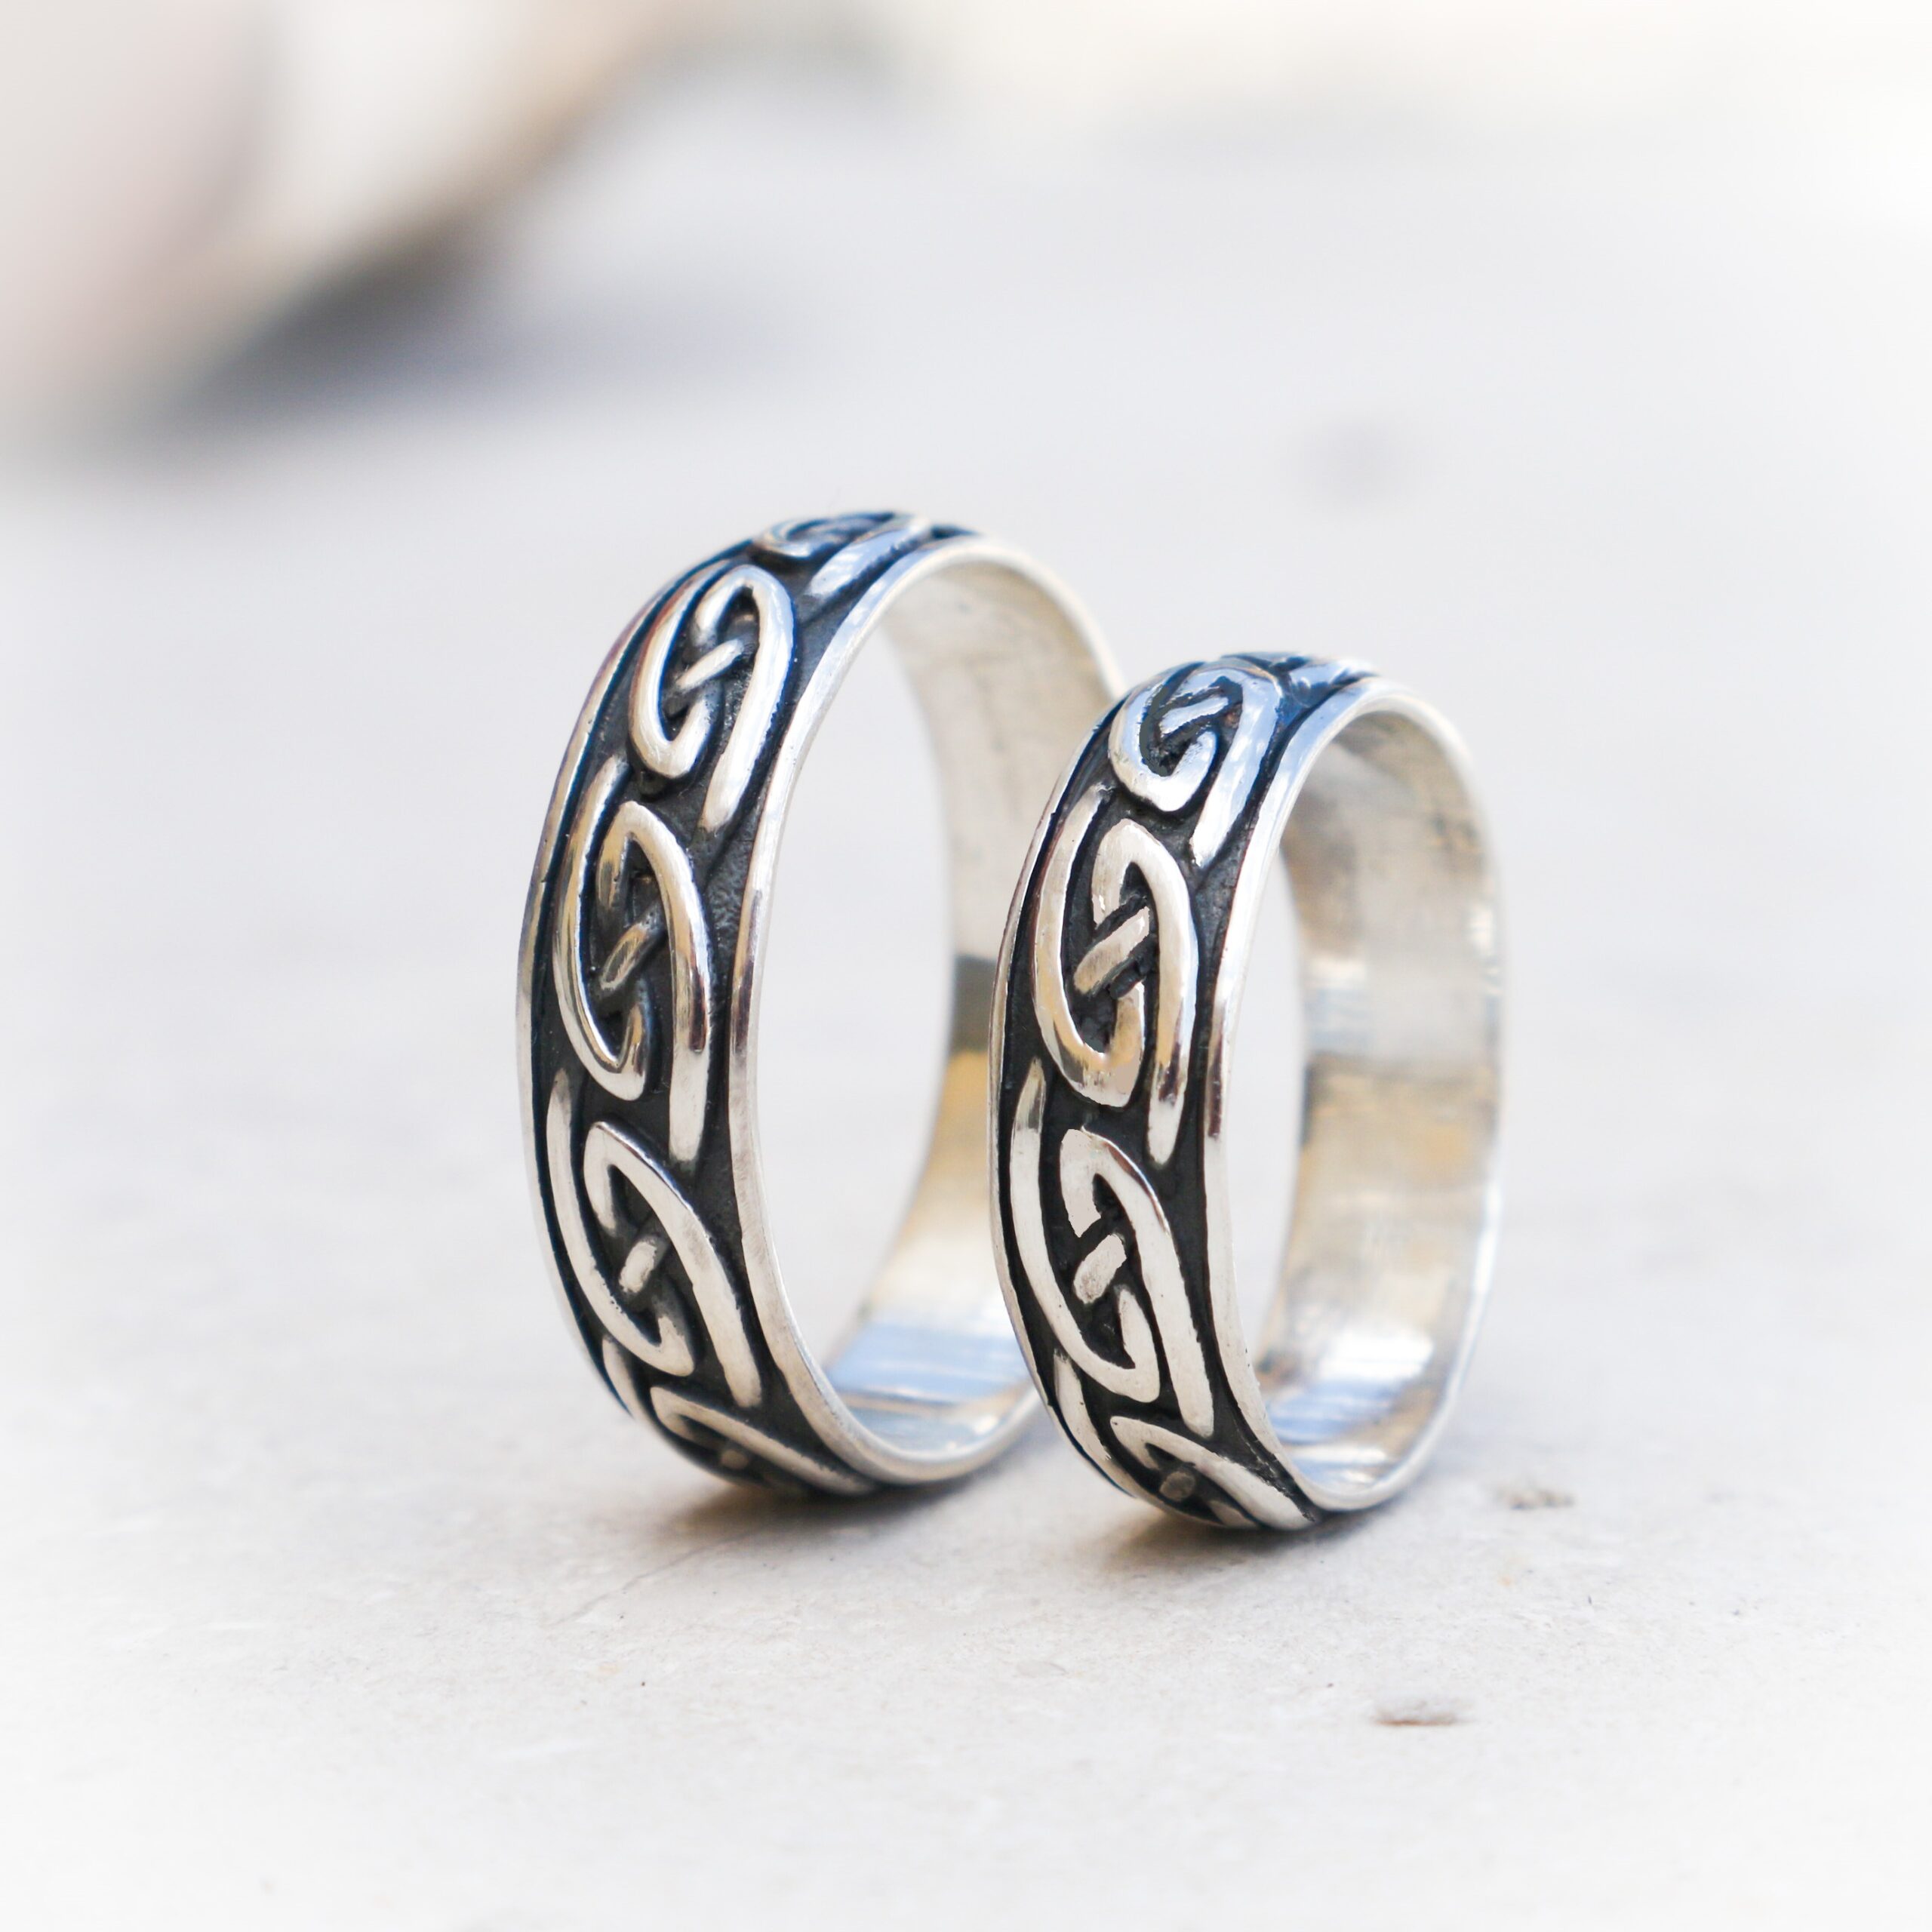 Magistraat Vervelen Verklaring Set ringen in zilver met een keltisch motief . - Scarabee sieraden